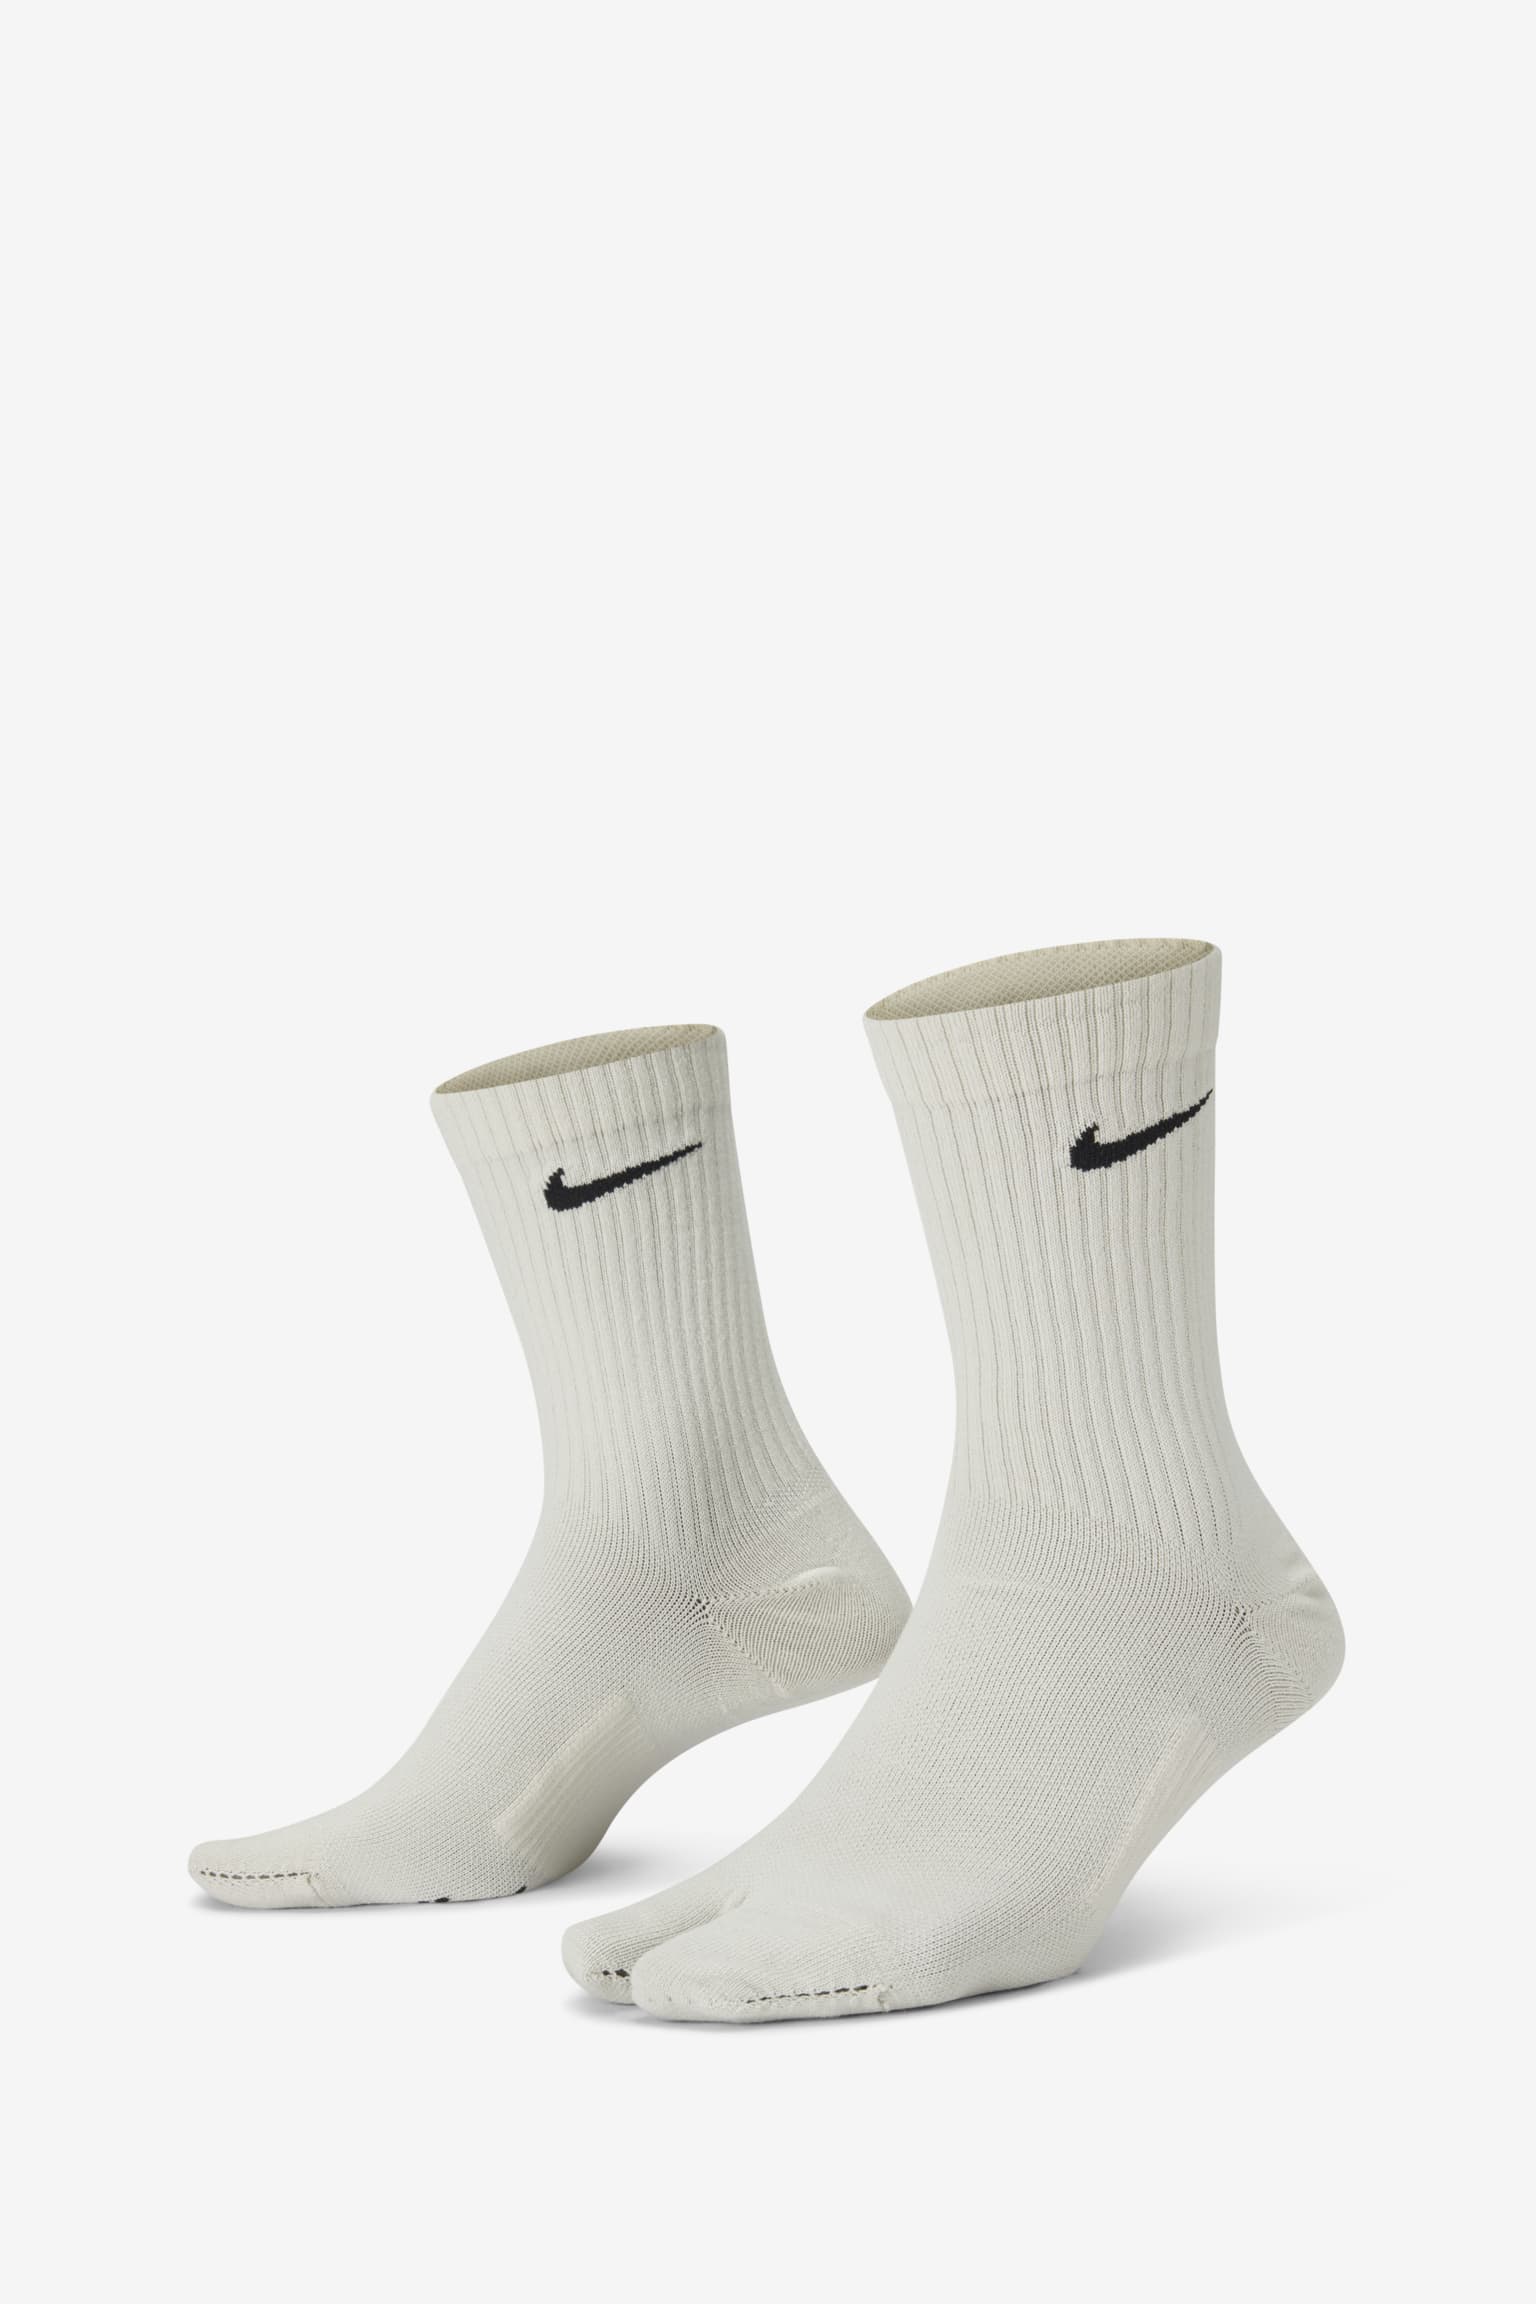 optocht Slaapkamer Herkenning Releasedatum Rift sokken kledingcollectie.. Nike SNKRS BE